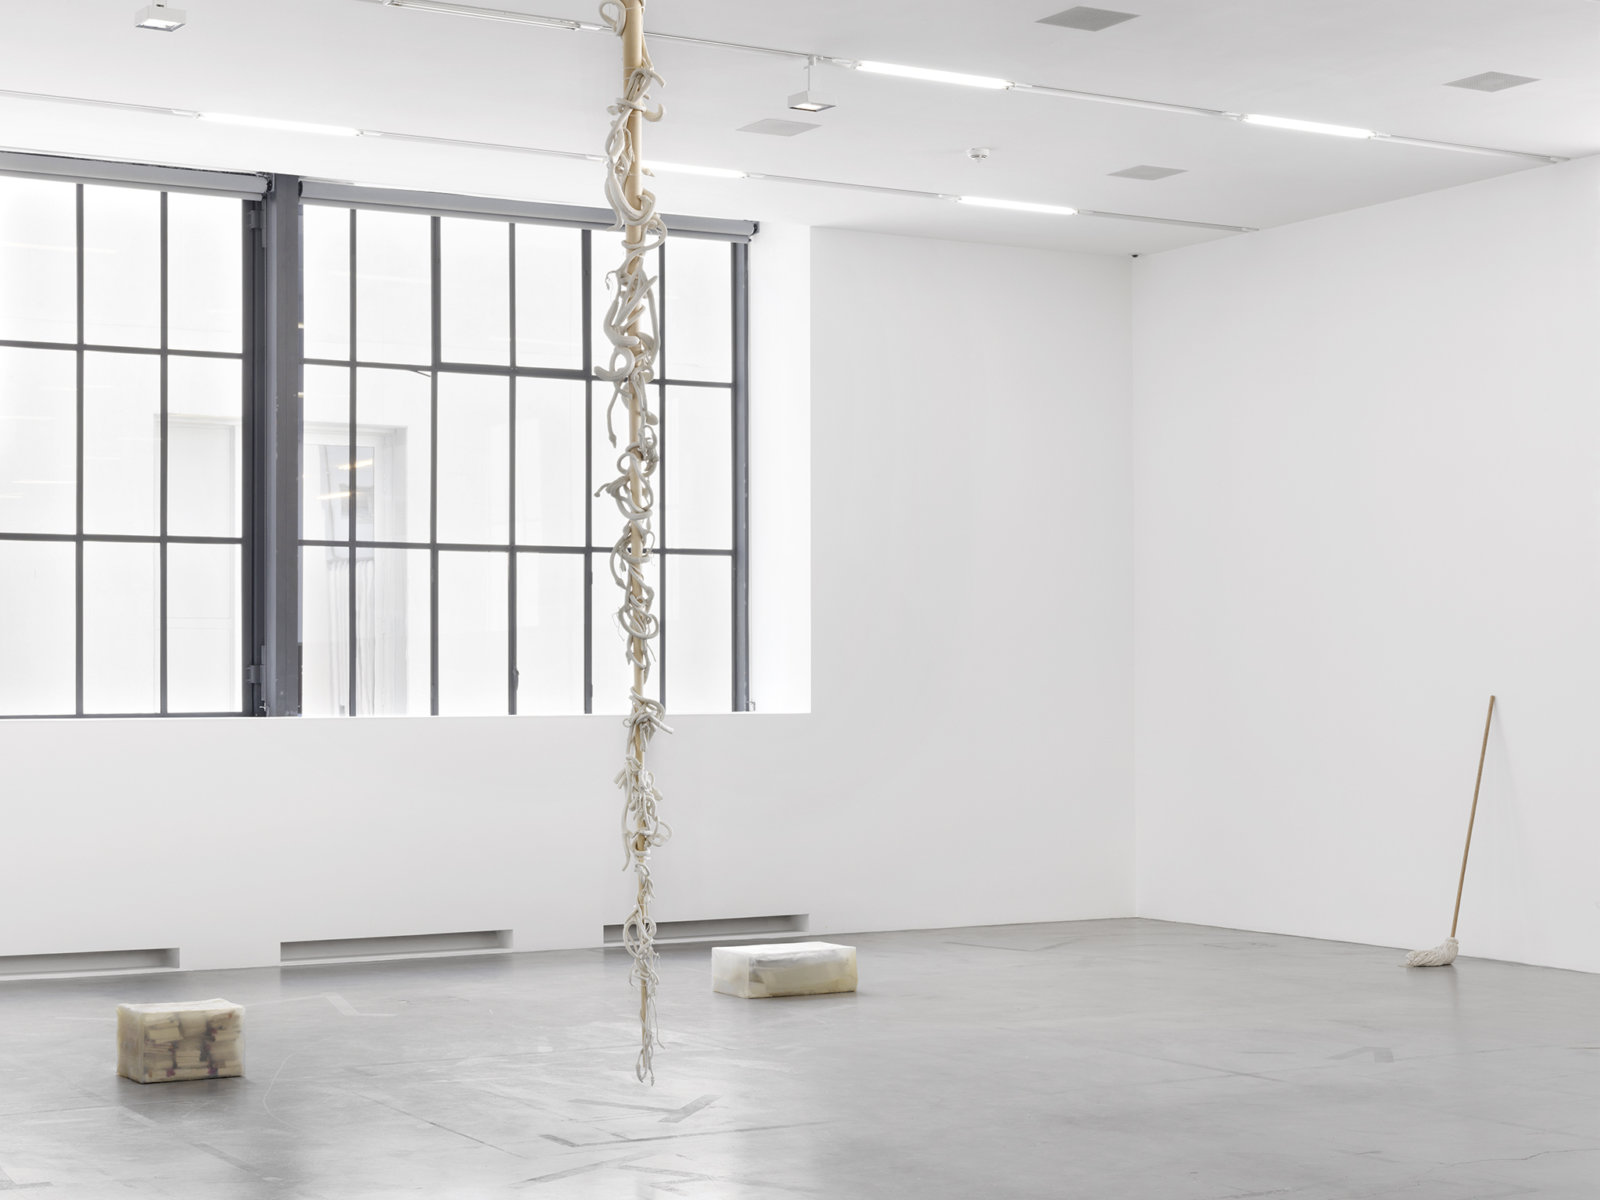 Liz Magor, Eddie’s White Wonder, 1994, silicone rubber, wood, 163 x 10 x 10 in. (414 x 25 x 25 cm). Installation view, you you you, Migros Museum für Gegenwartskunst, Zurich, 2017